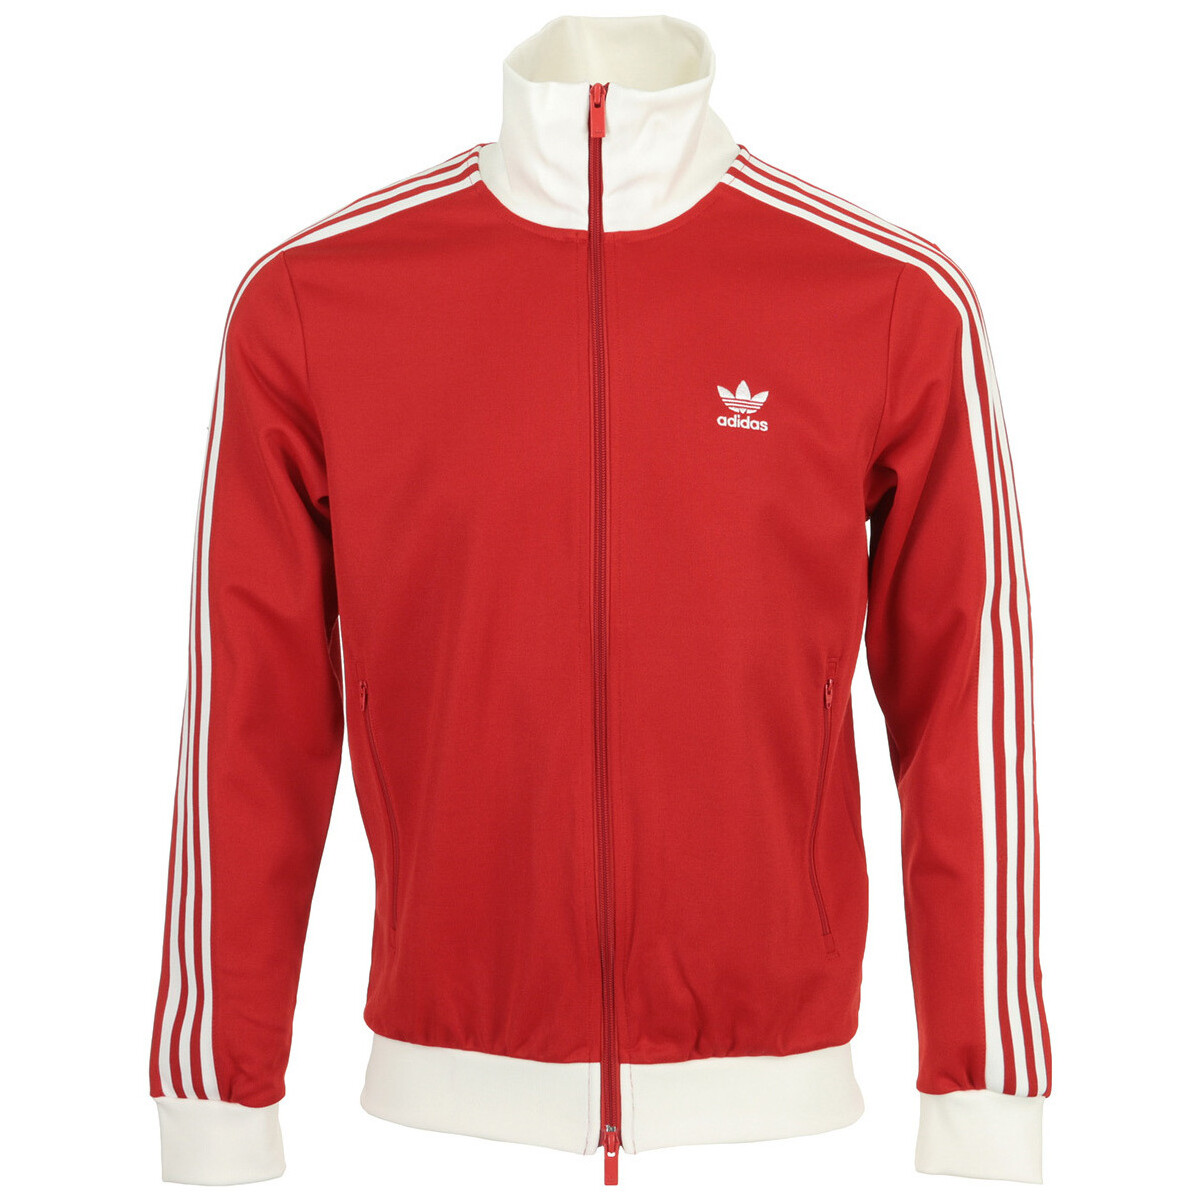 Vêtements Homme Vestes de survêtement adidas Originals Beckenbauer Tt Rouge